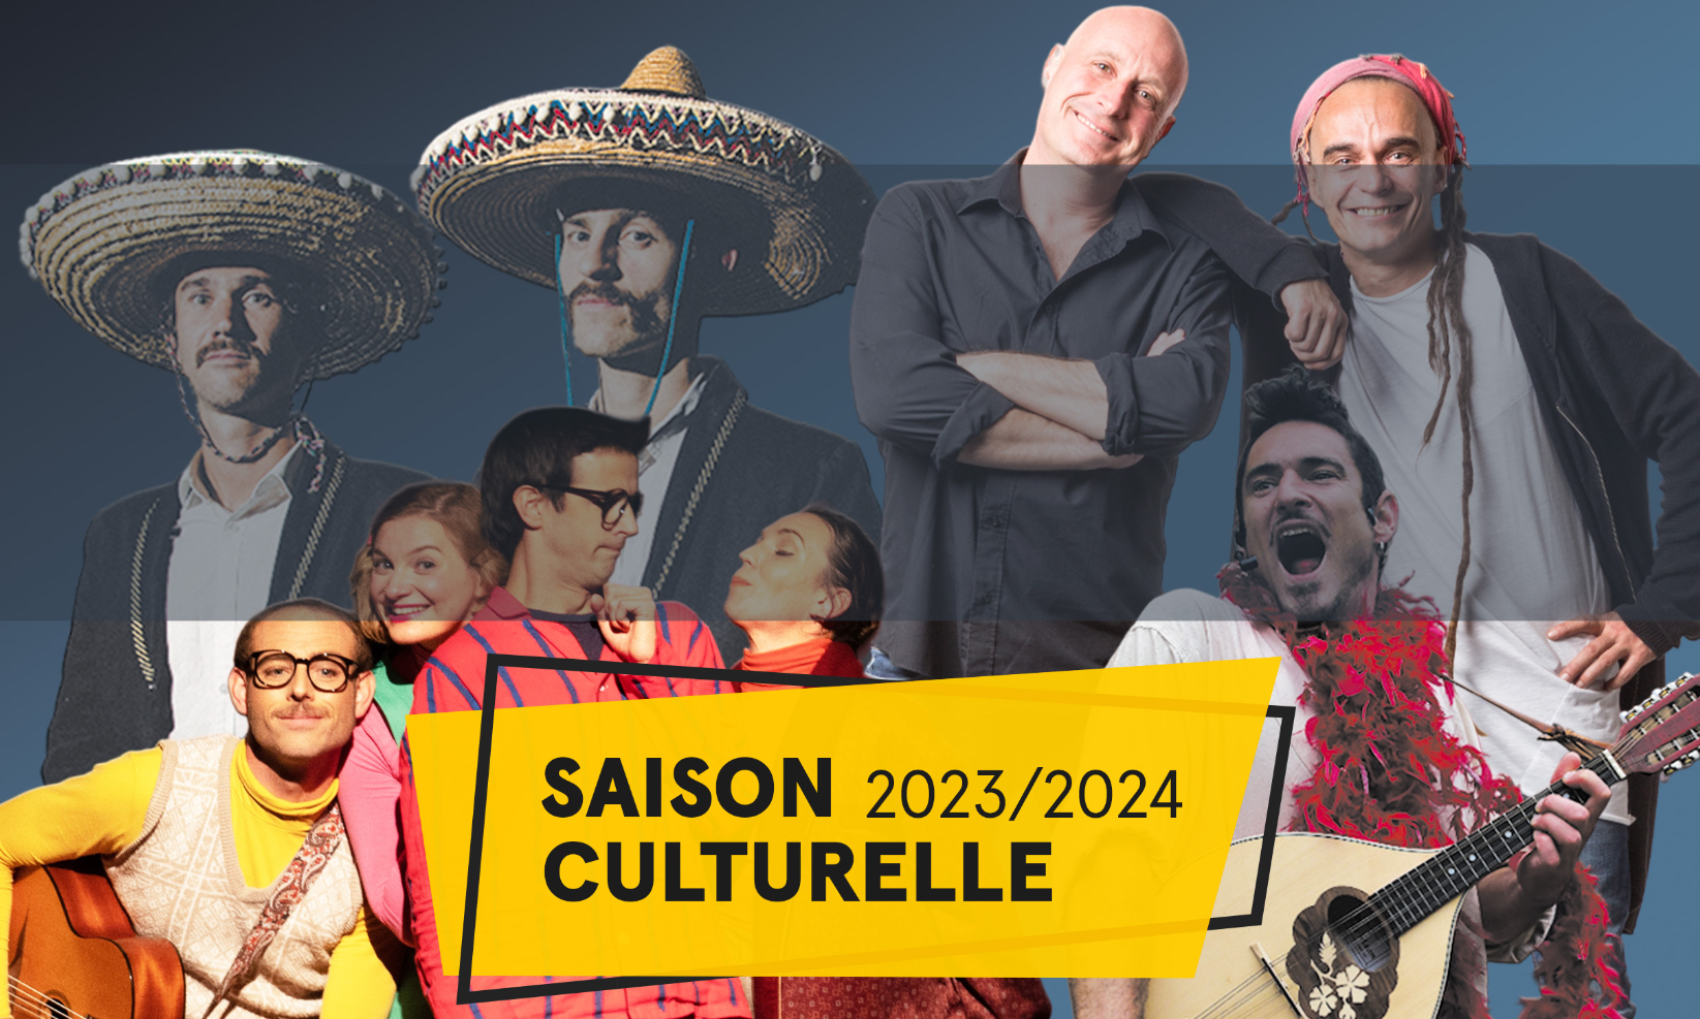 Saison culturelle 2023/2024